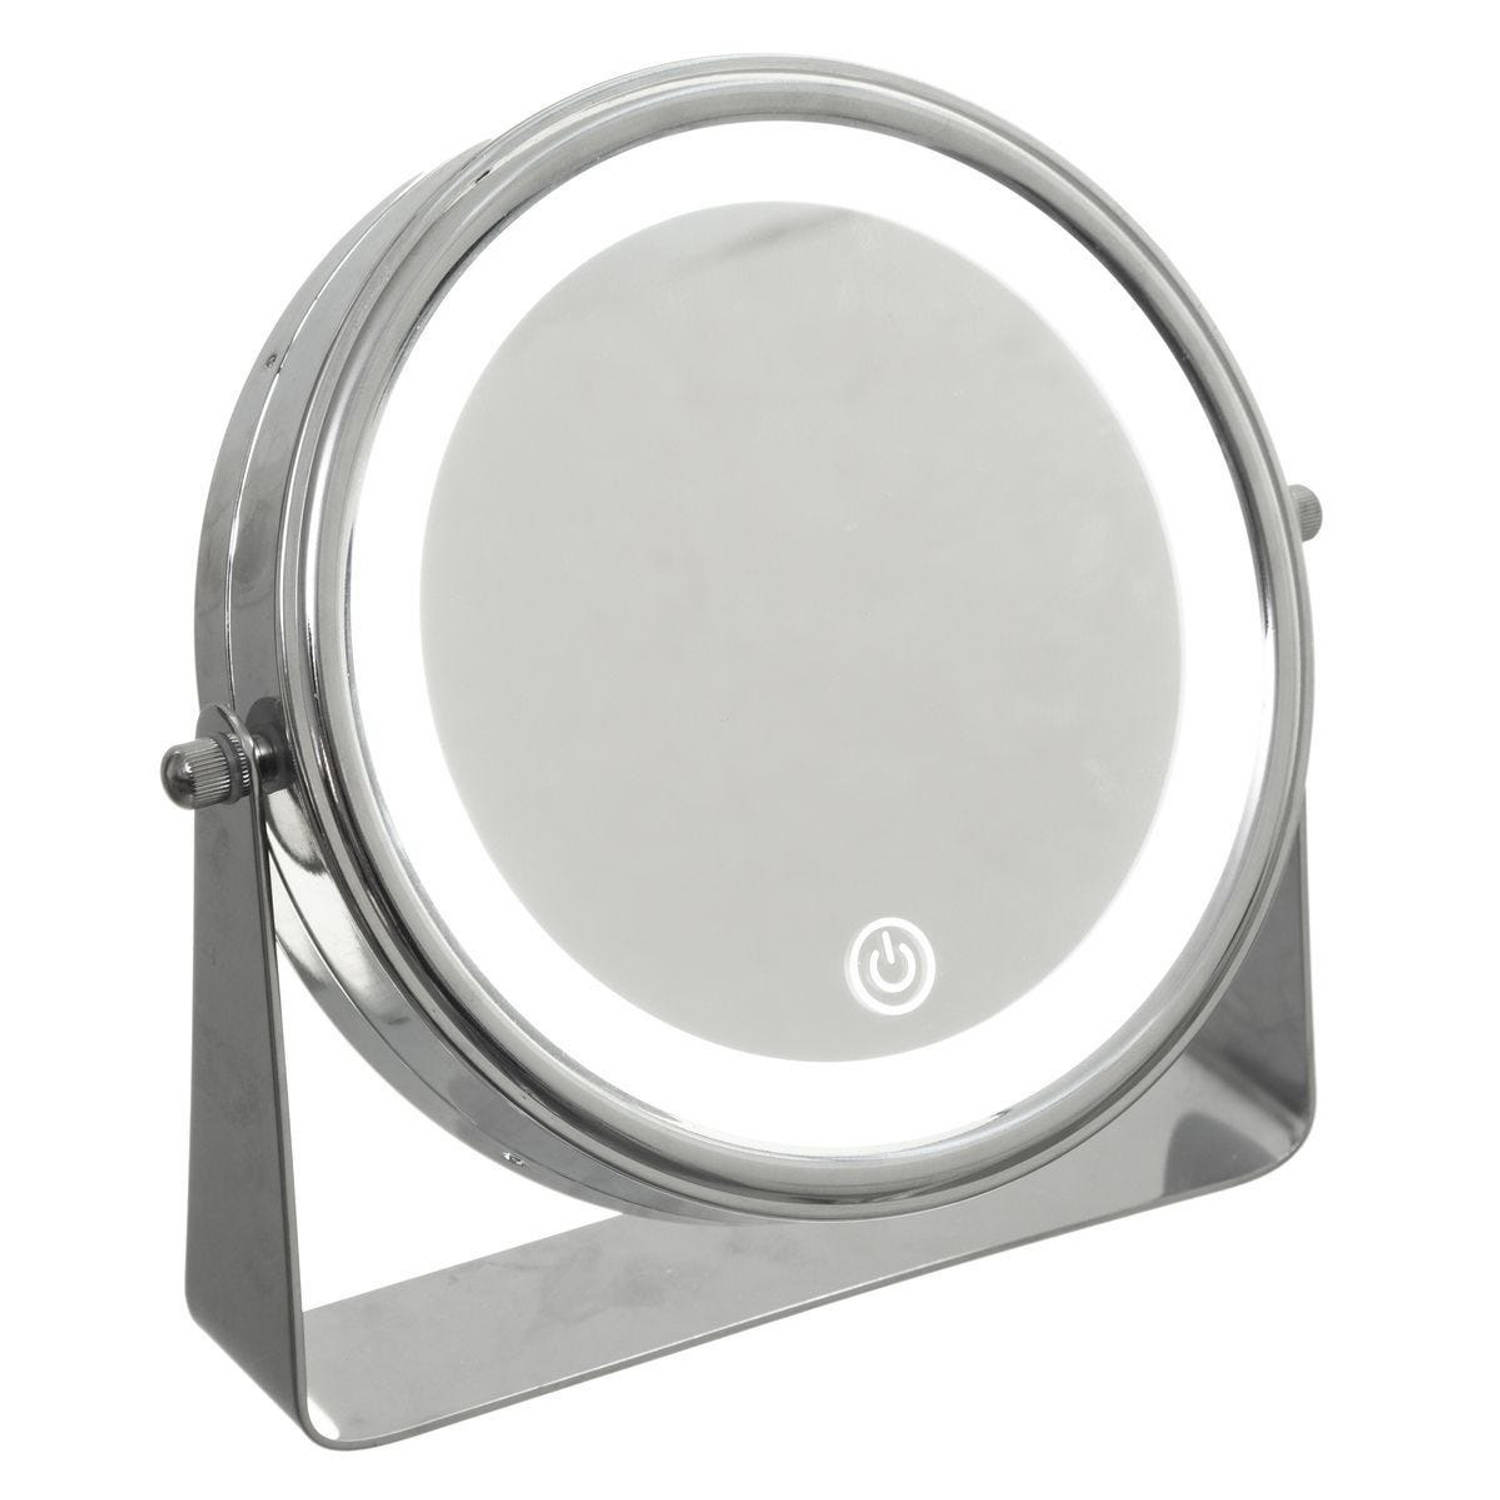 Five® Make-up spiegel met verlichting 5x vergrotend - Zilver